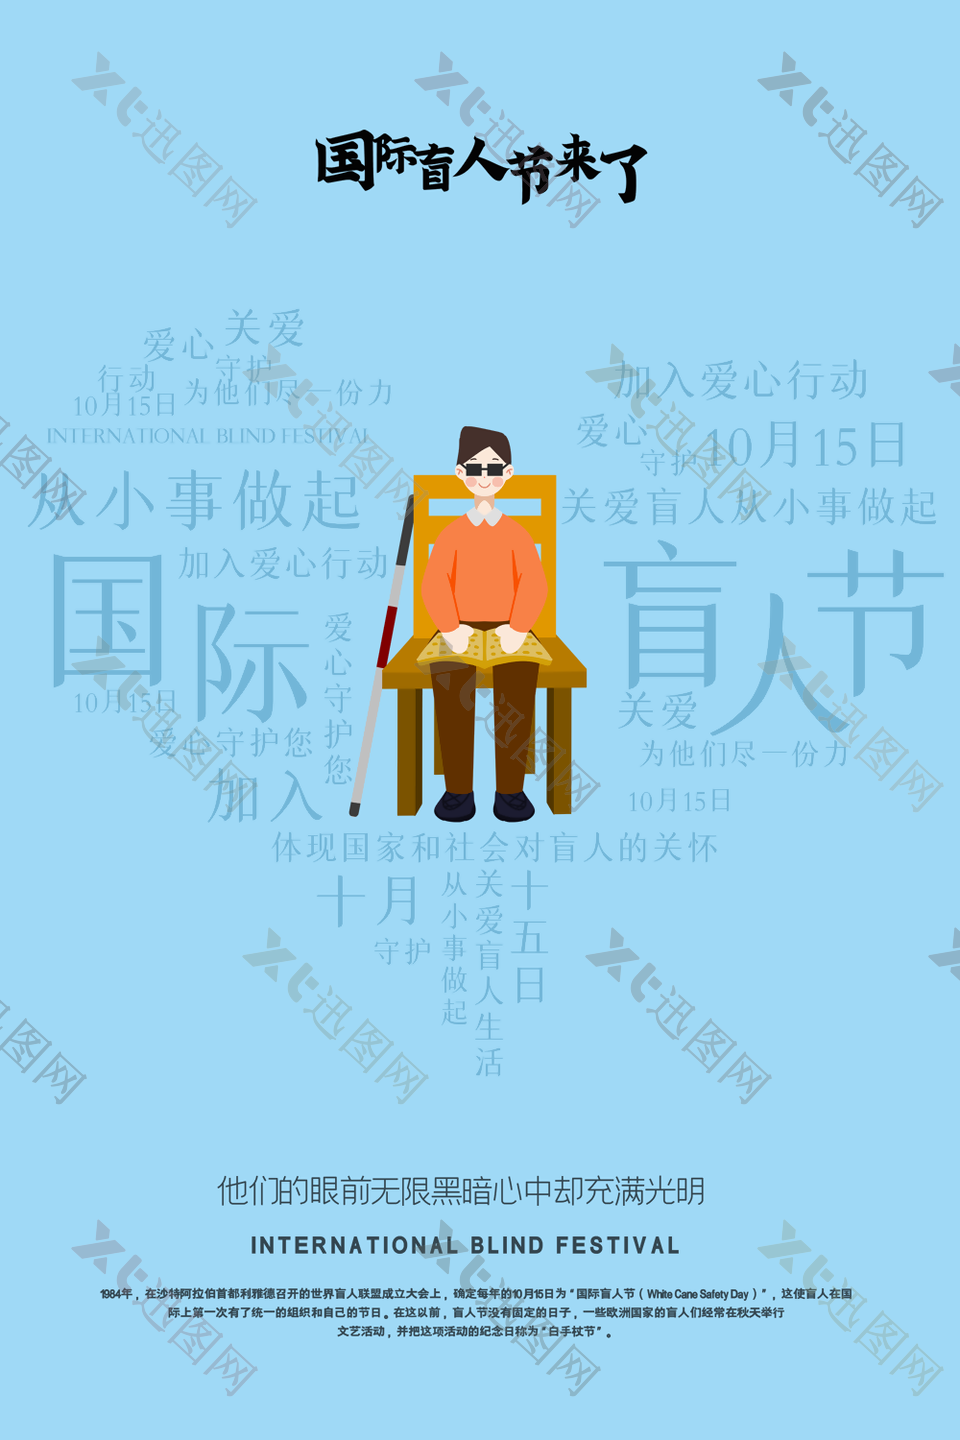 蓝色简约手绘国际盲人节爱心行动插画海报